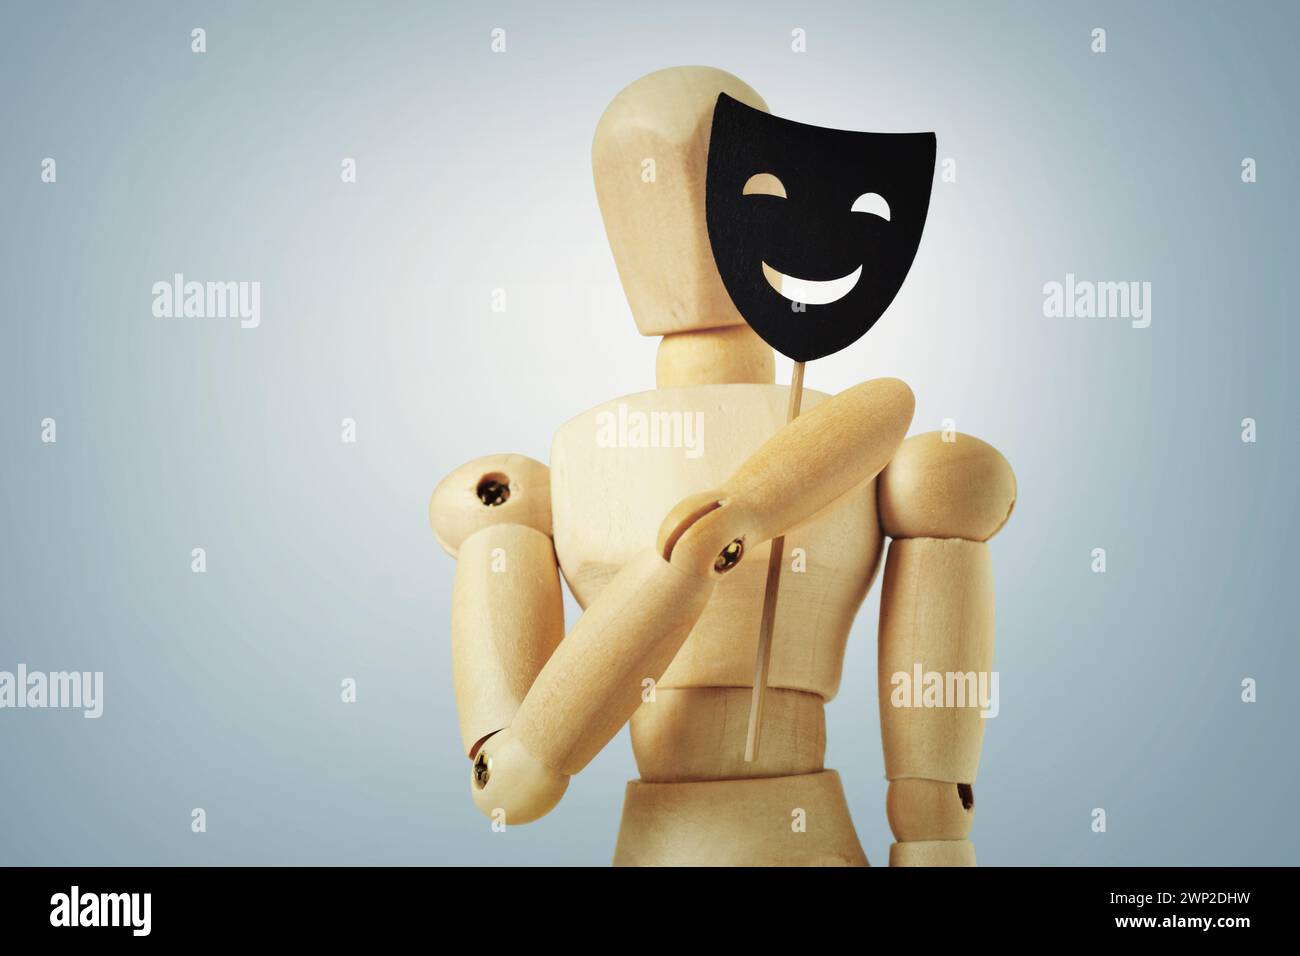 Mannequin en bois cachant la moitié du visage avec masque - concept de psychologie et de masquage de la personnalité Banque D'Images